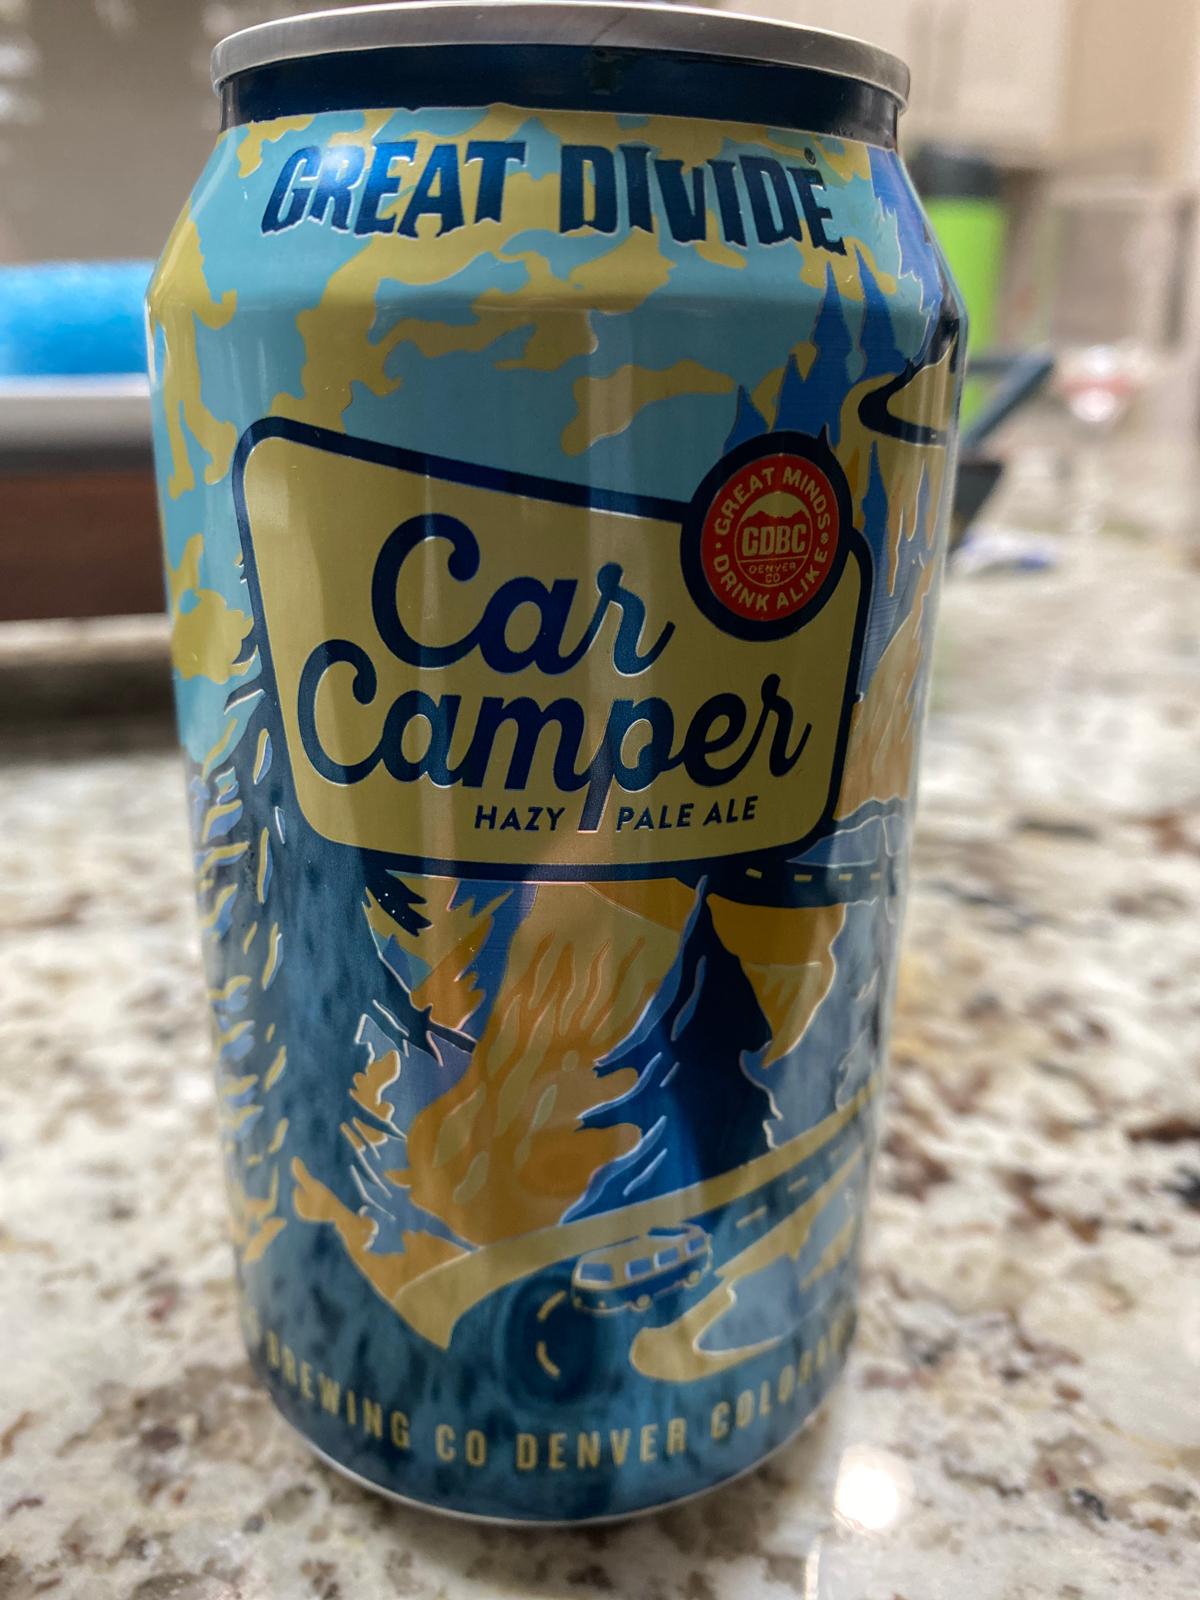 Car Camper